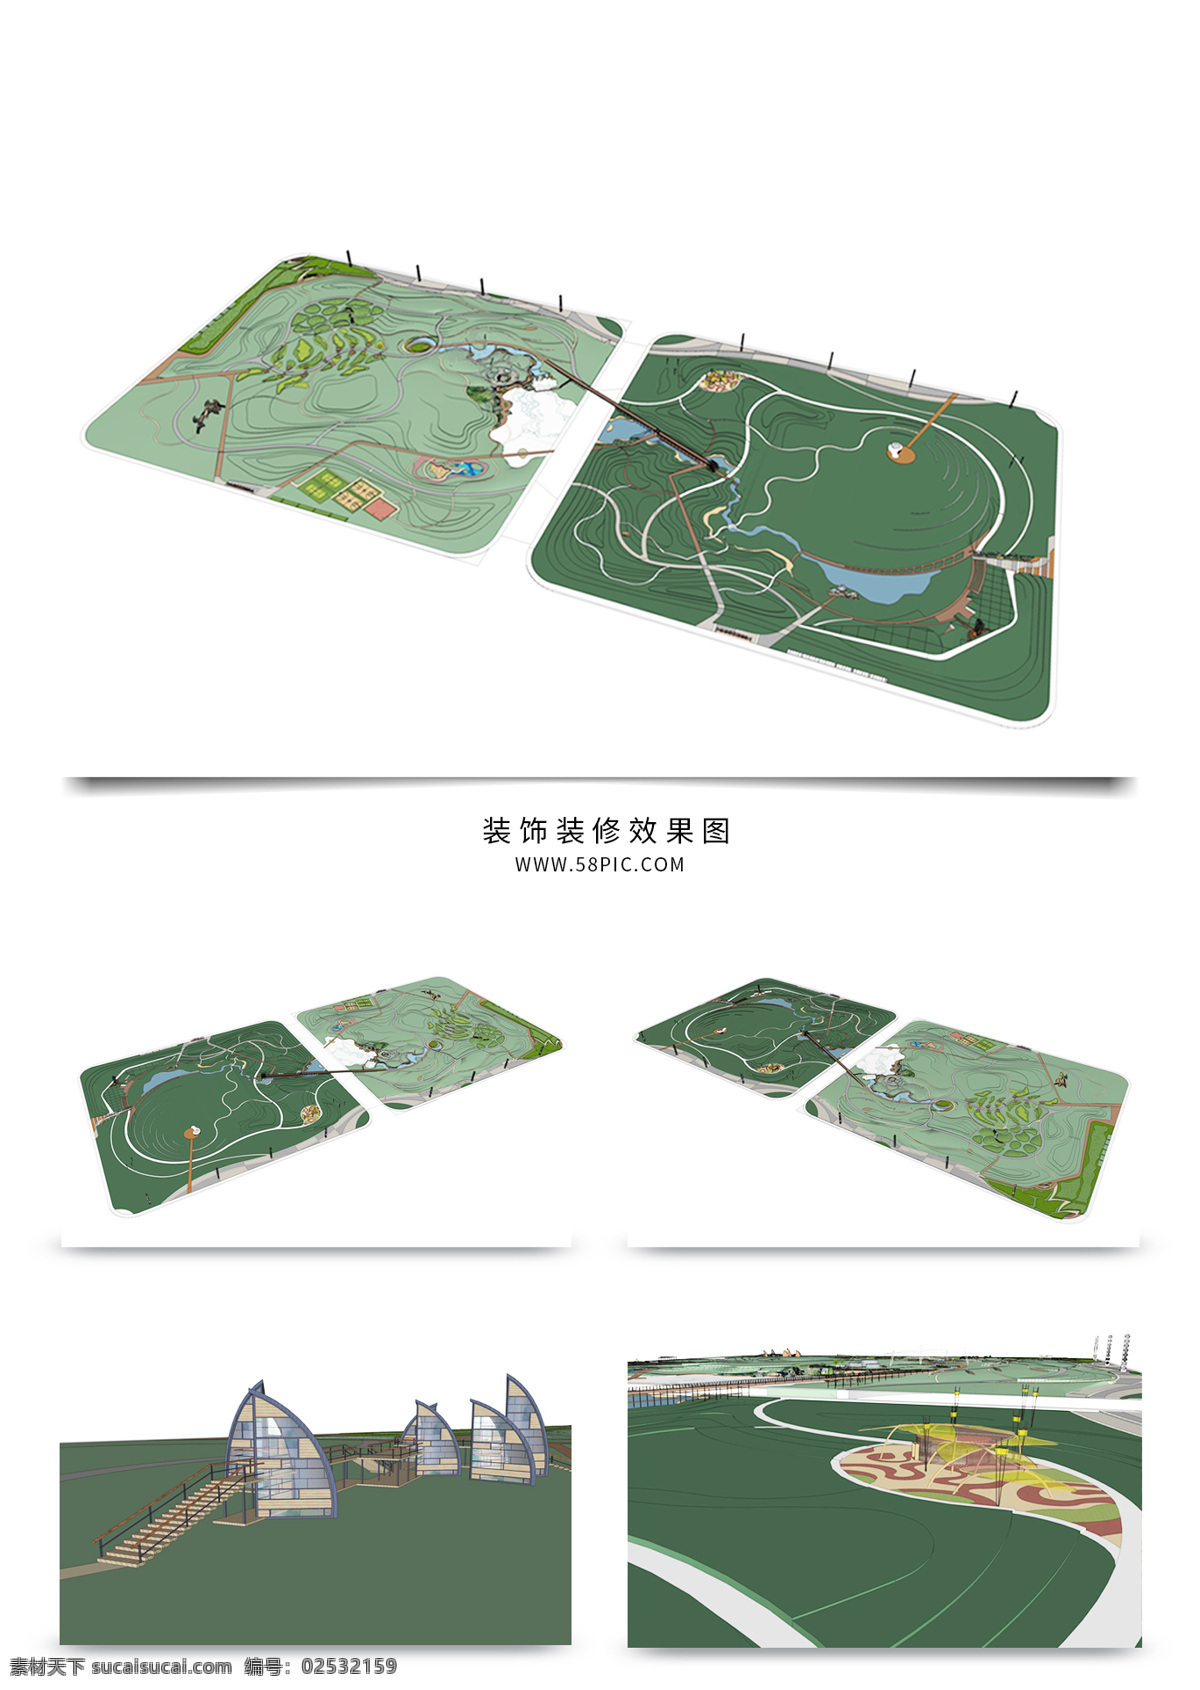 景观 公园 规划 su 透视 模型 公园景观规划 园林 sketchup 草图 大师 景观规划 建筑装饰 设计素材 景观规划设计